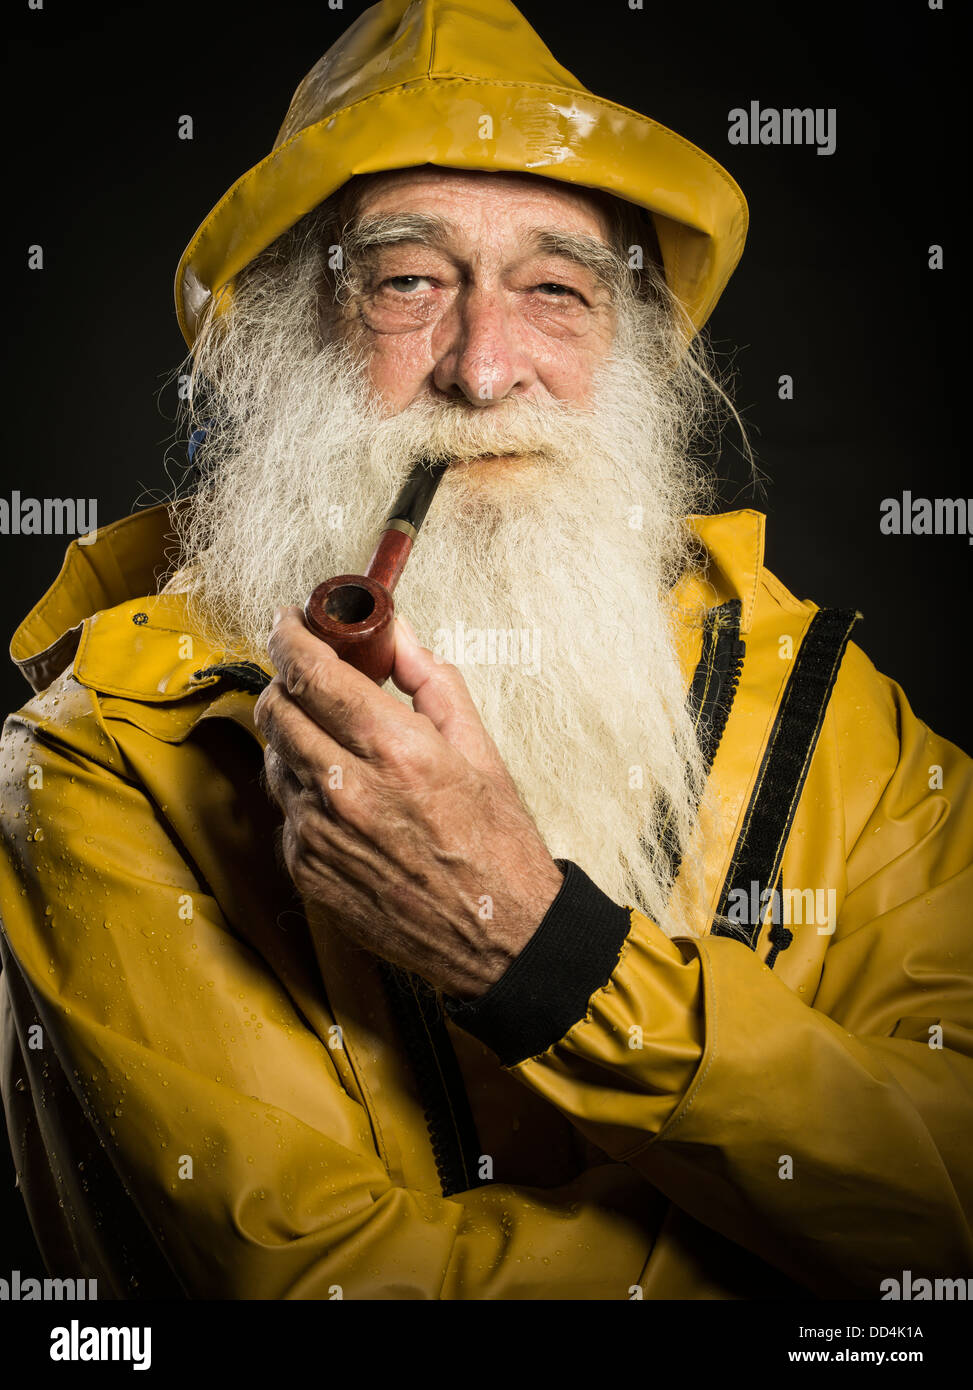 Vieux Pêcheur avec barbe blanche portant des sou'wester hat et Guy Cotten veste cirés Banque D'Images